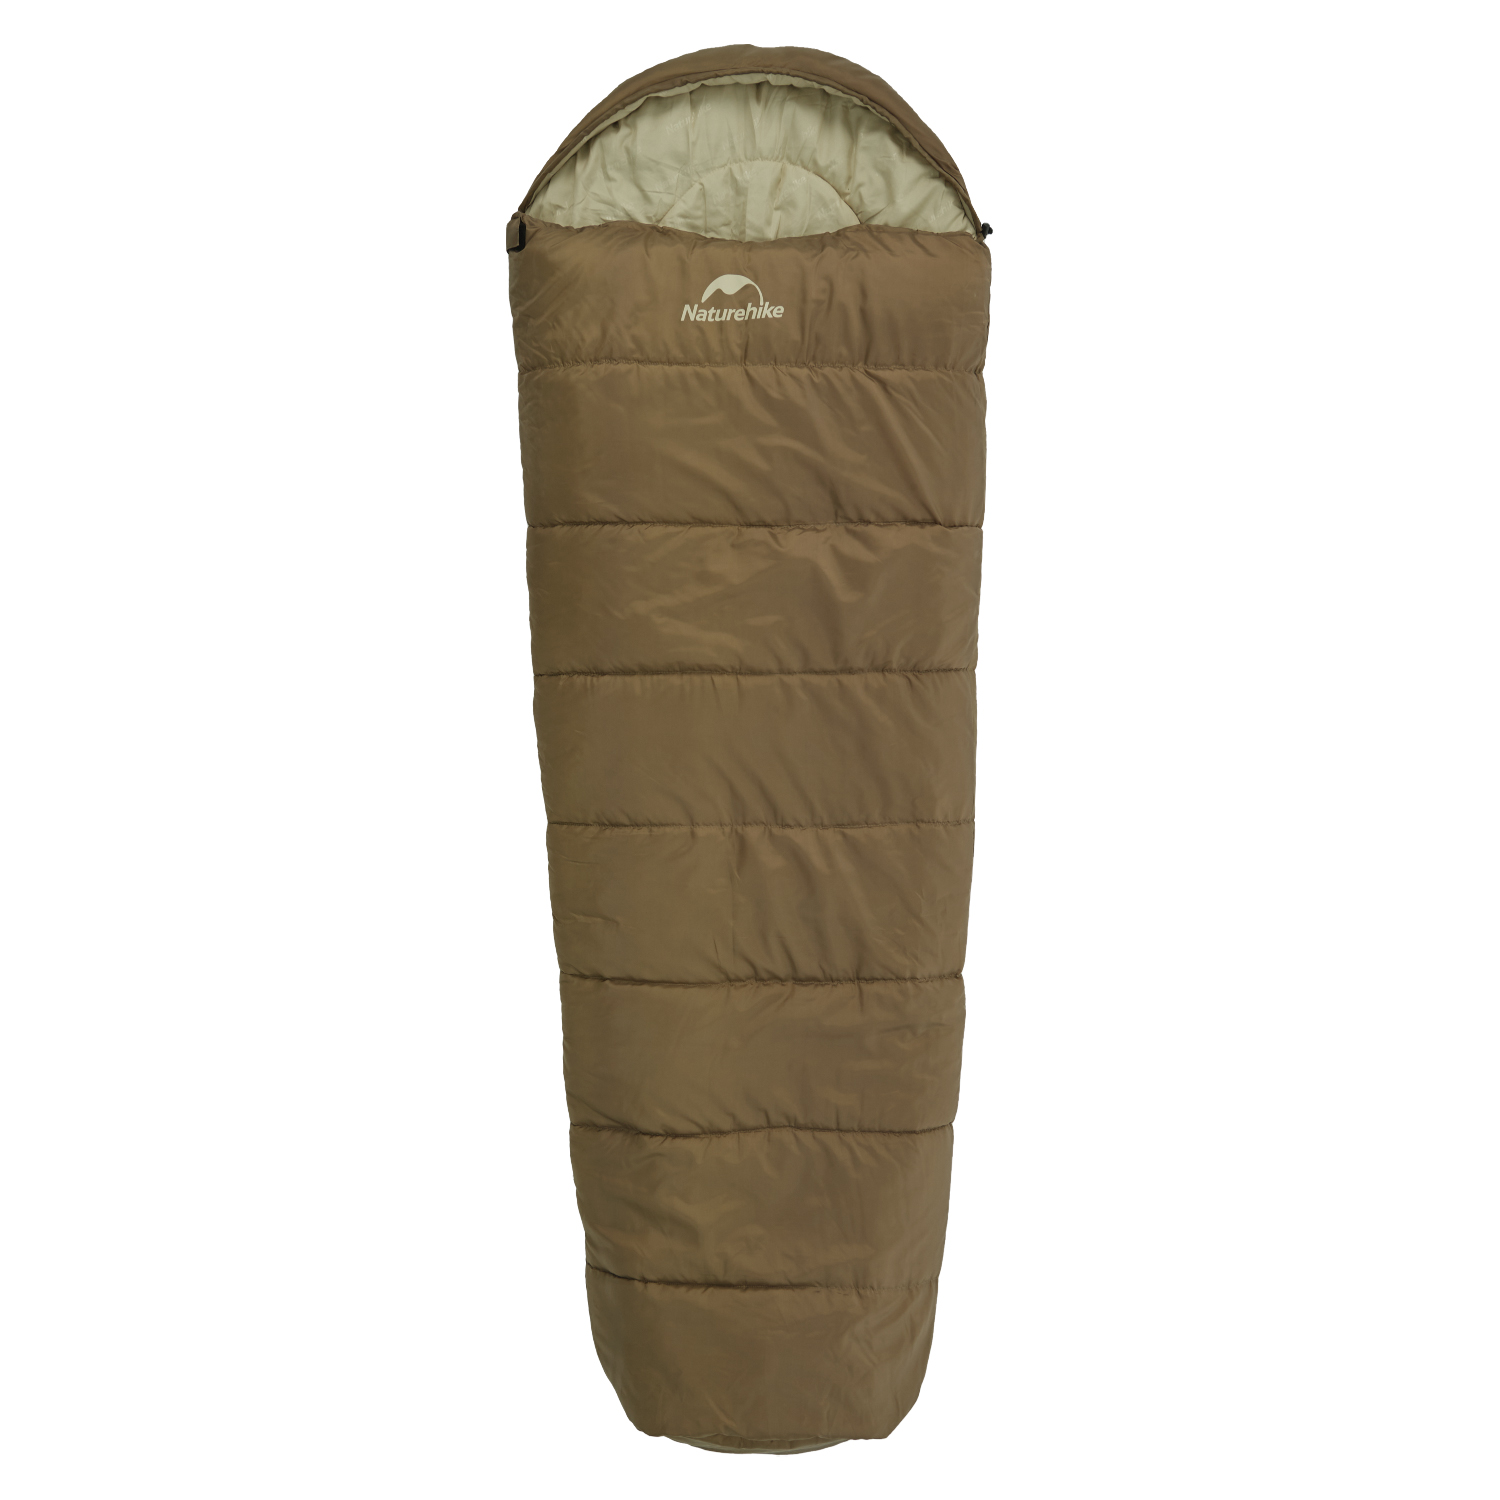 Naturehike 寝袋 マミー型 シュラフ 冬用 -5°C~4°C オールシーズン スリーピングバッグ